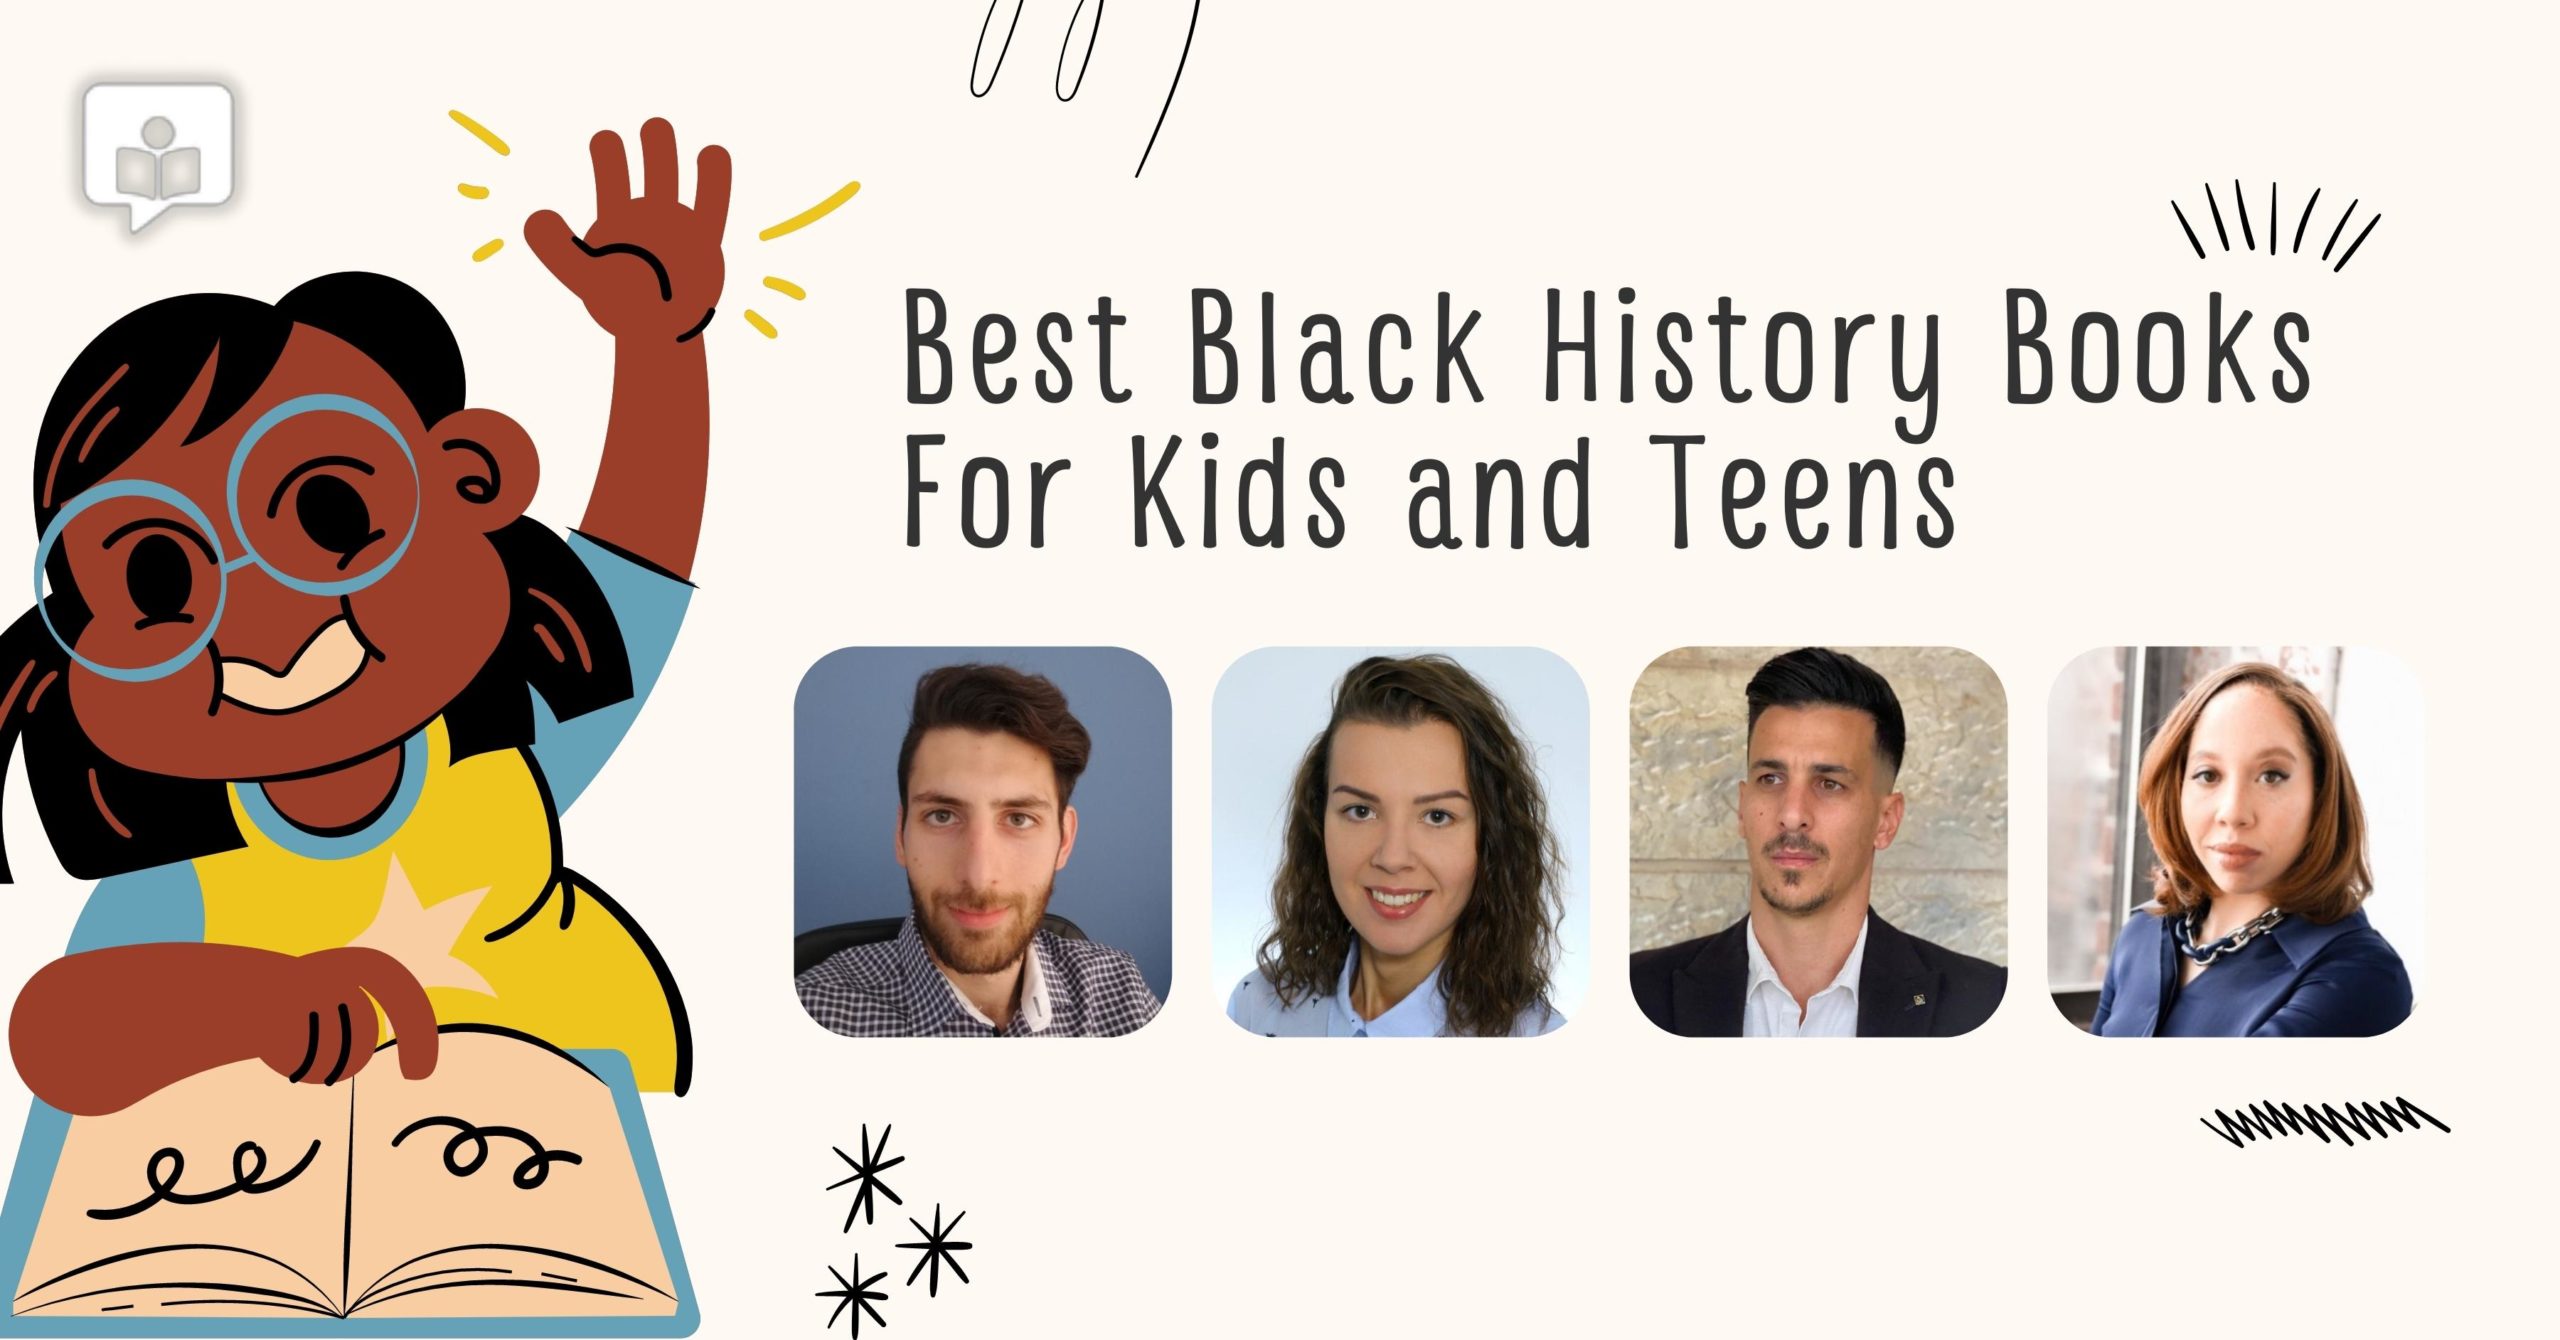 Black History books for kids